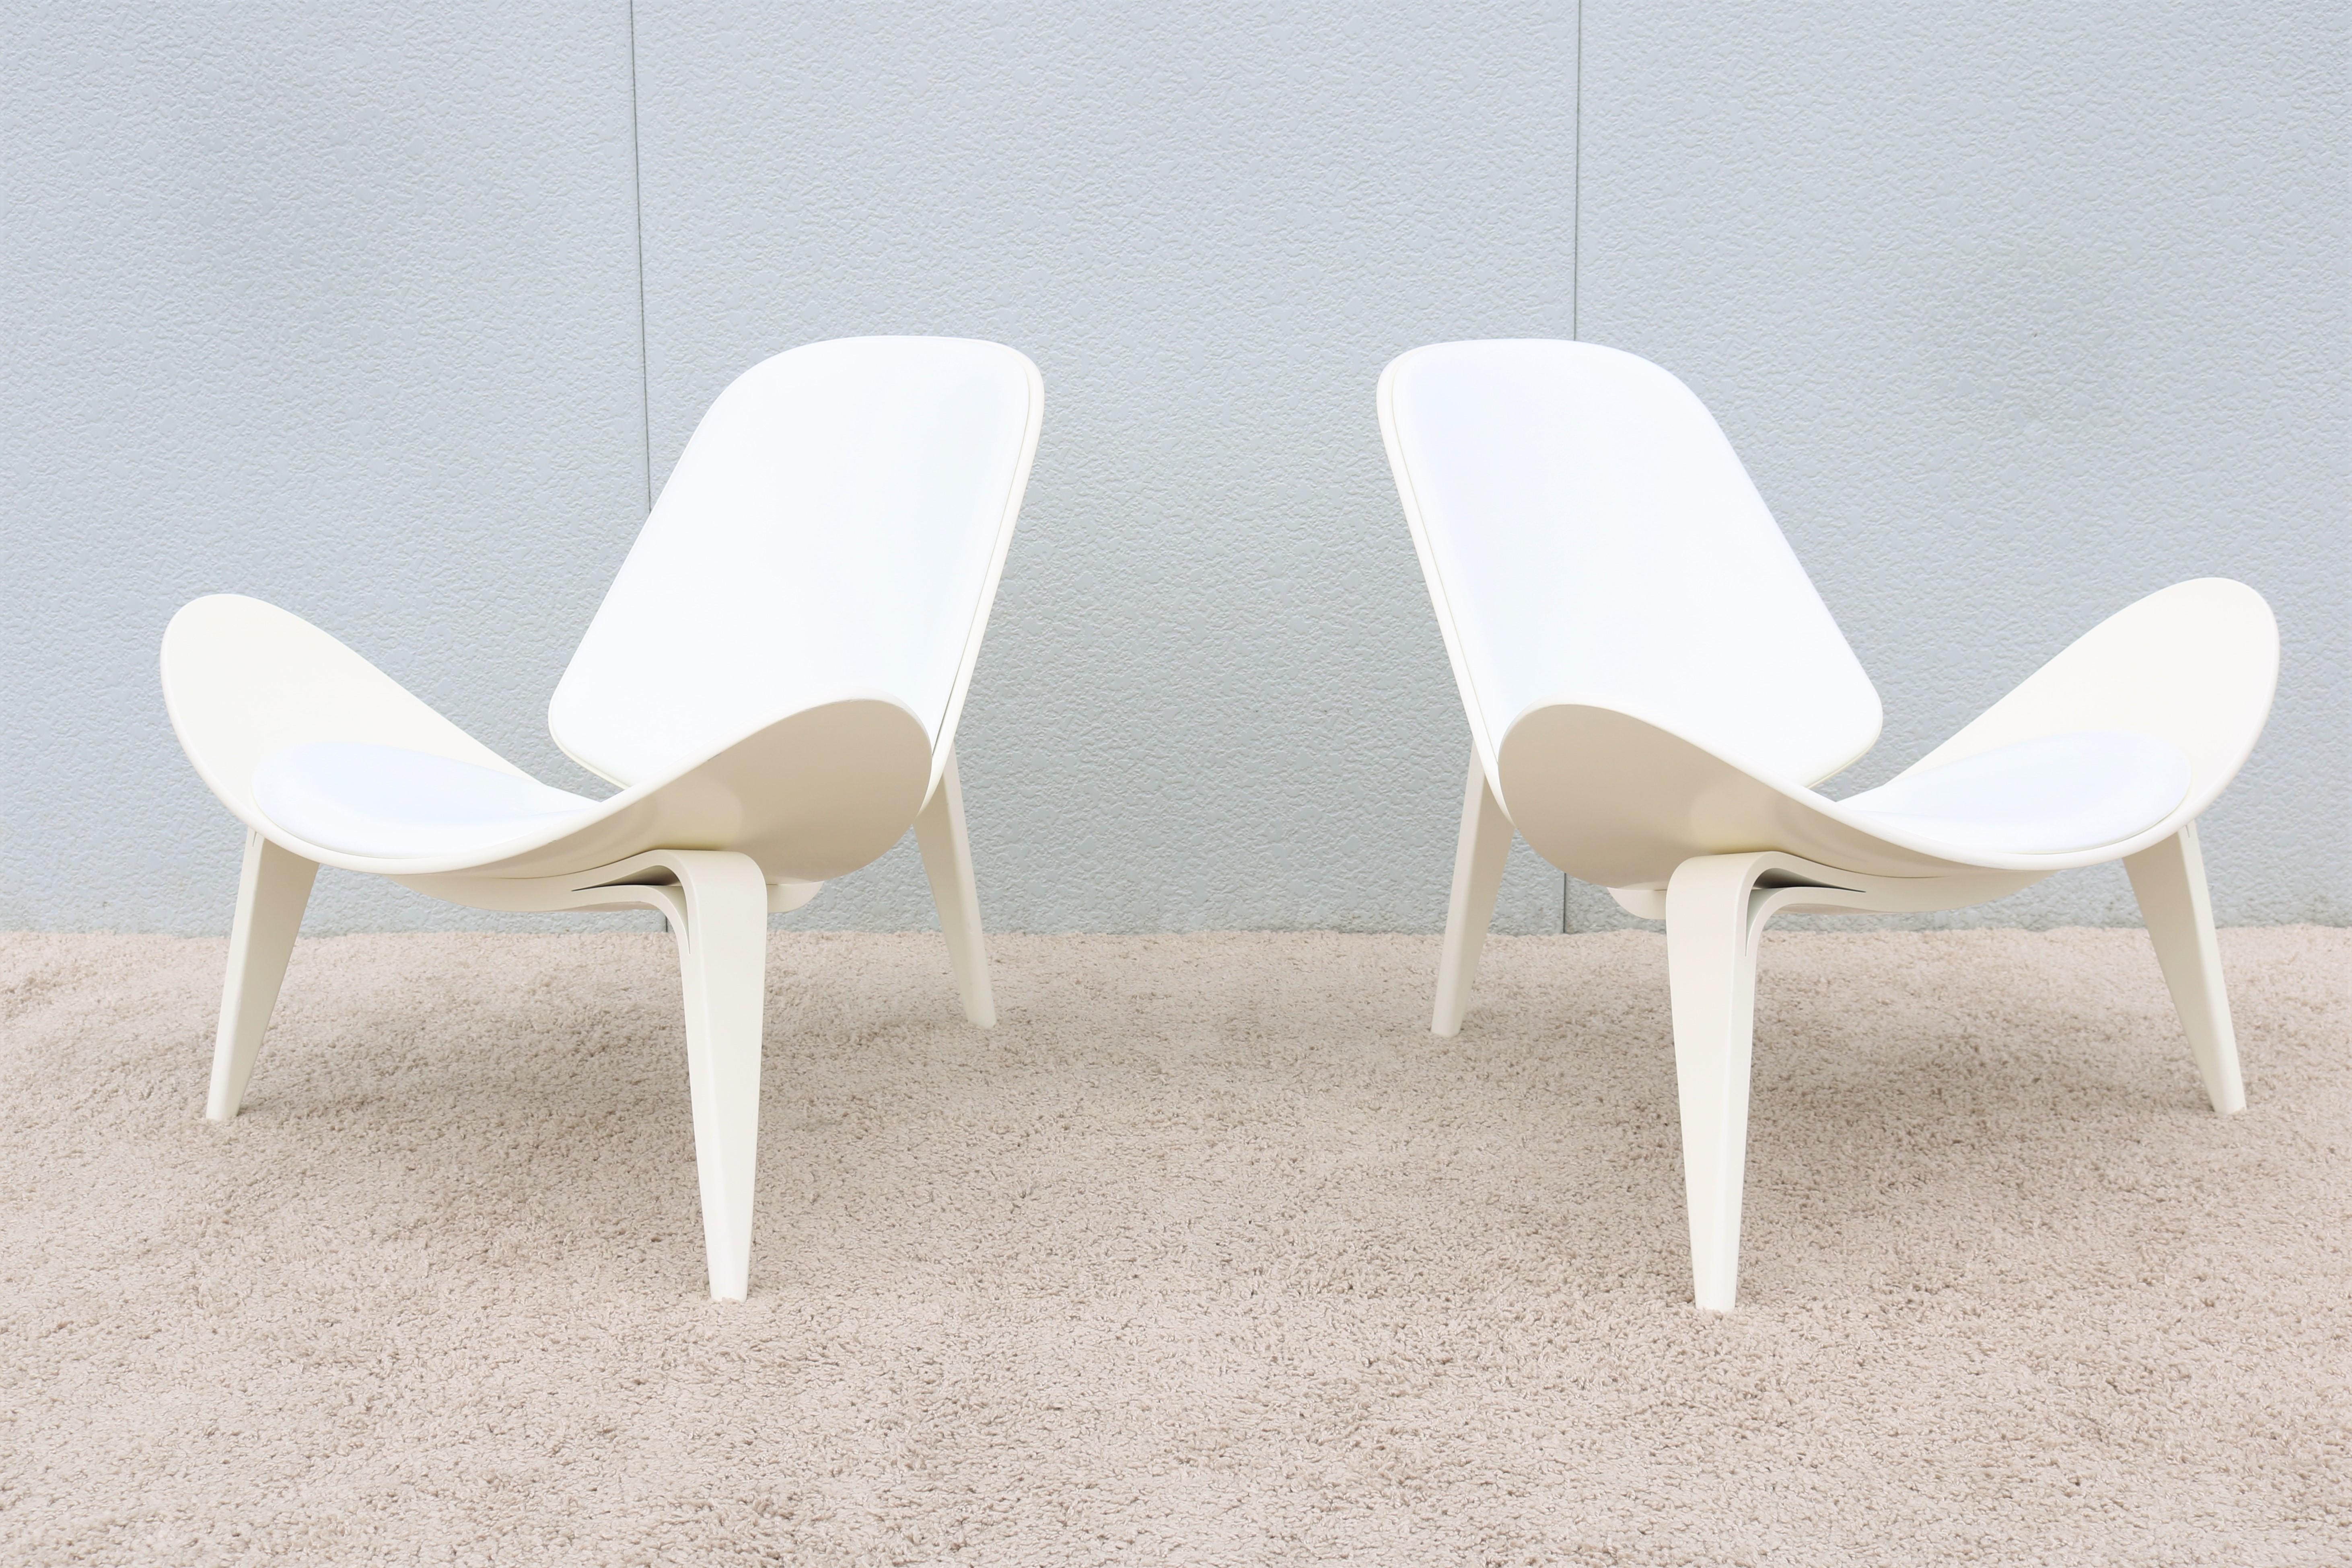 Paire de chaises coquillage CH07 de Hans J. Wegner pour Carl Hansen, de style danois moderne du milieu du siècle dernier Bon état - En vente à Secaucus, NJ